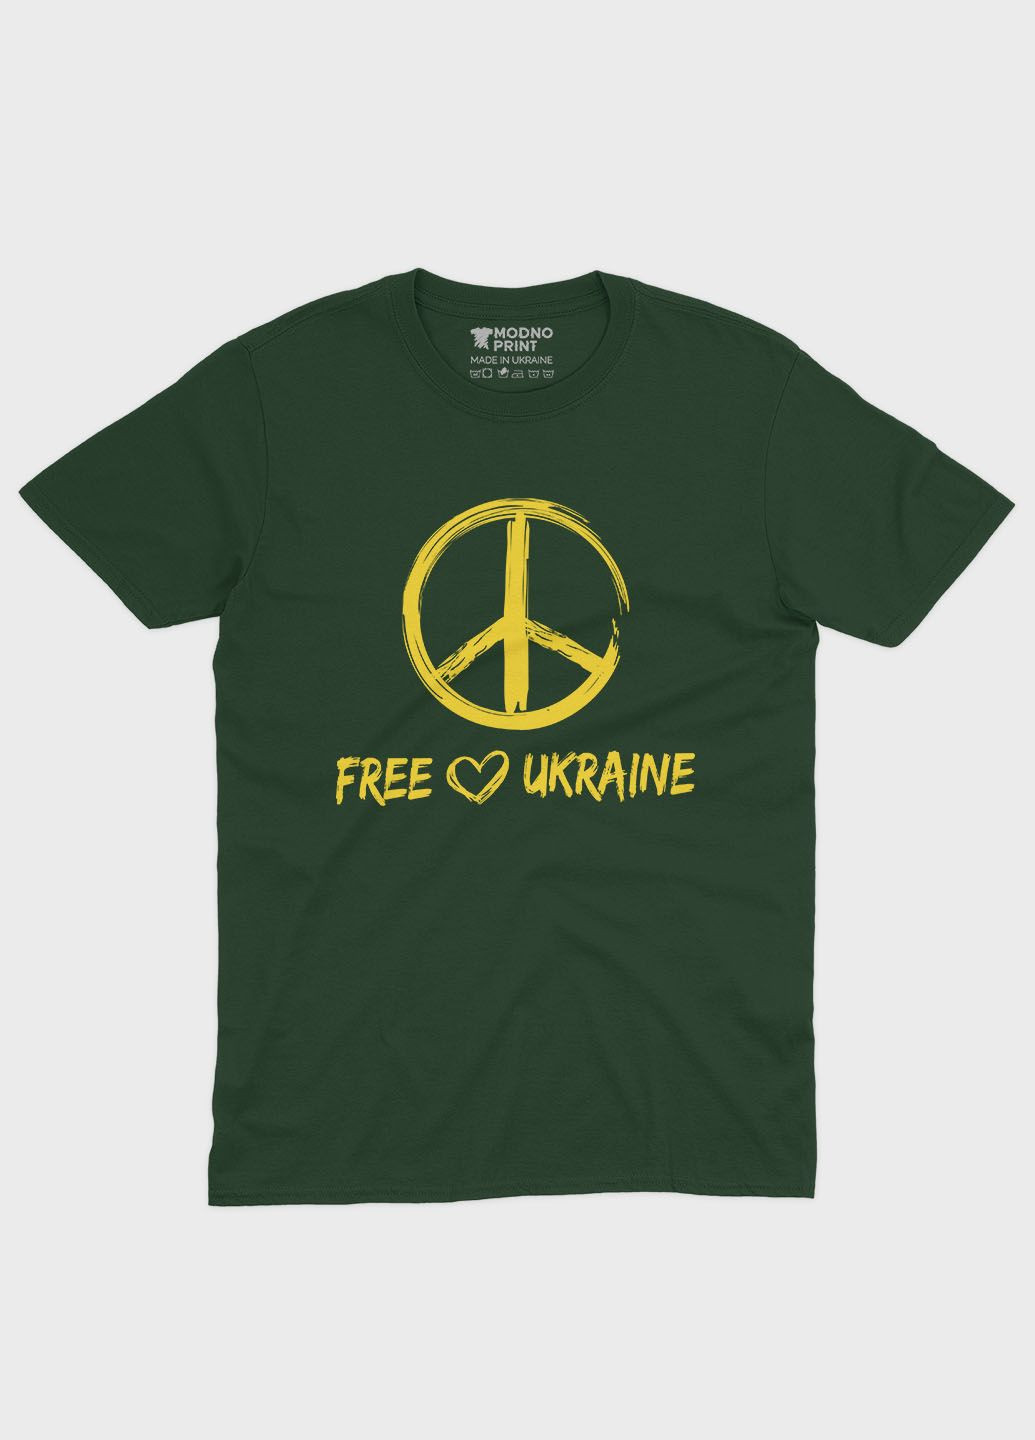 Темно-зеленая мужская футболка с патриотическим принтом free ukraine (ts001-2-bog-005-1-034) Modno